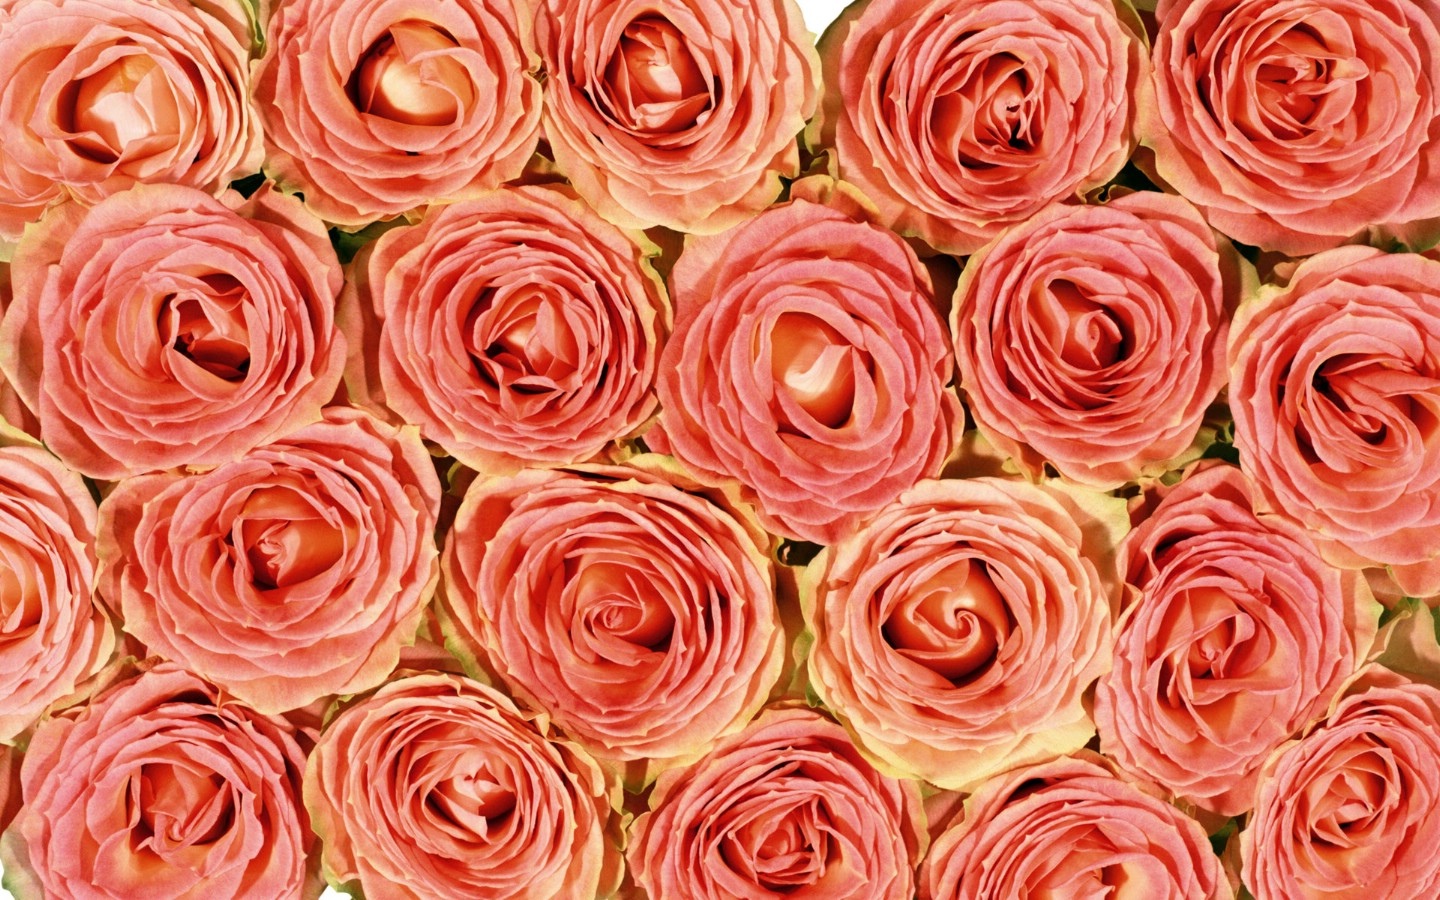 壁纸1440x900玫瑰写真 4 14壁纸 玫瑰写真壁纸 玫瑰写真图片 玫瑰写真素材 花卉壁纸 花卉图库 花卉图片素材桌面壁纸